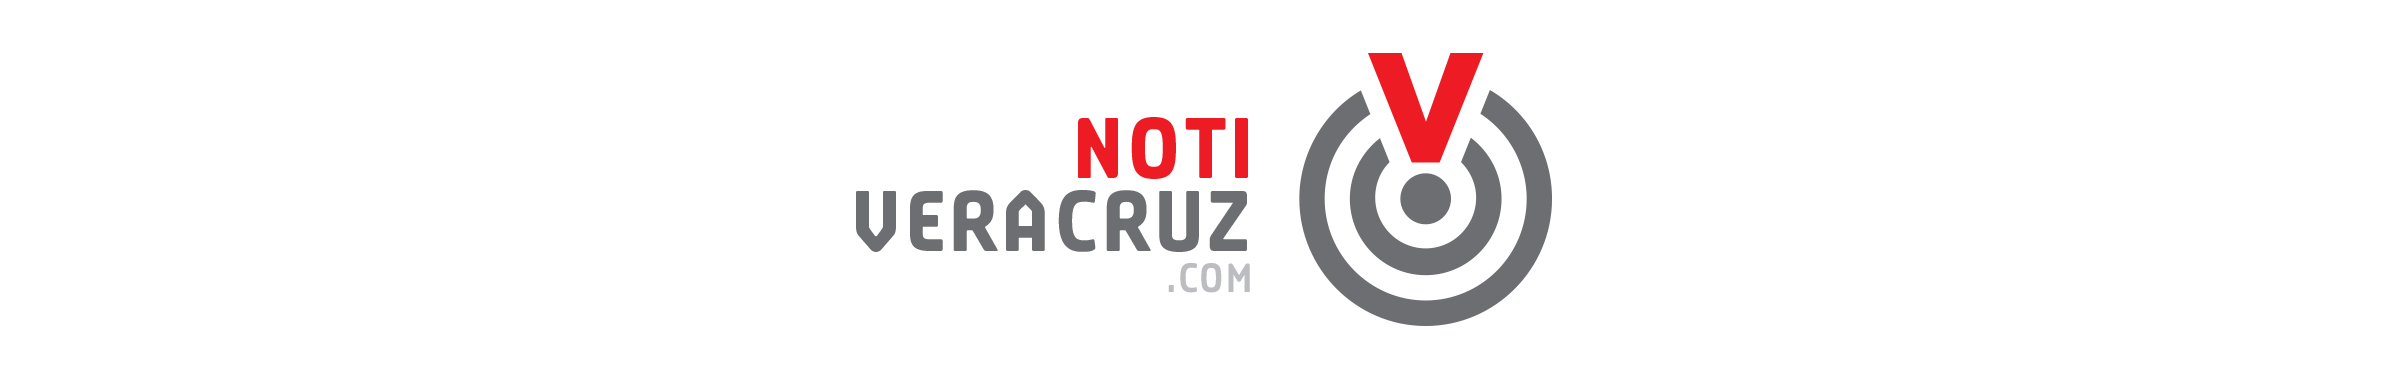 Noticias Veracruz